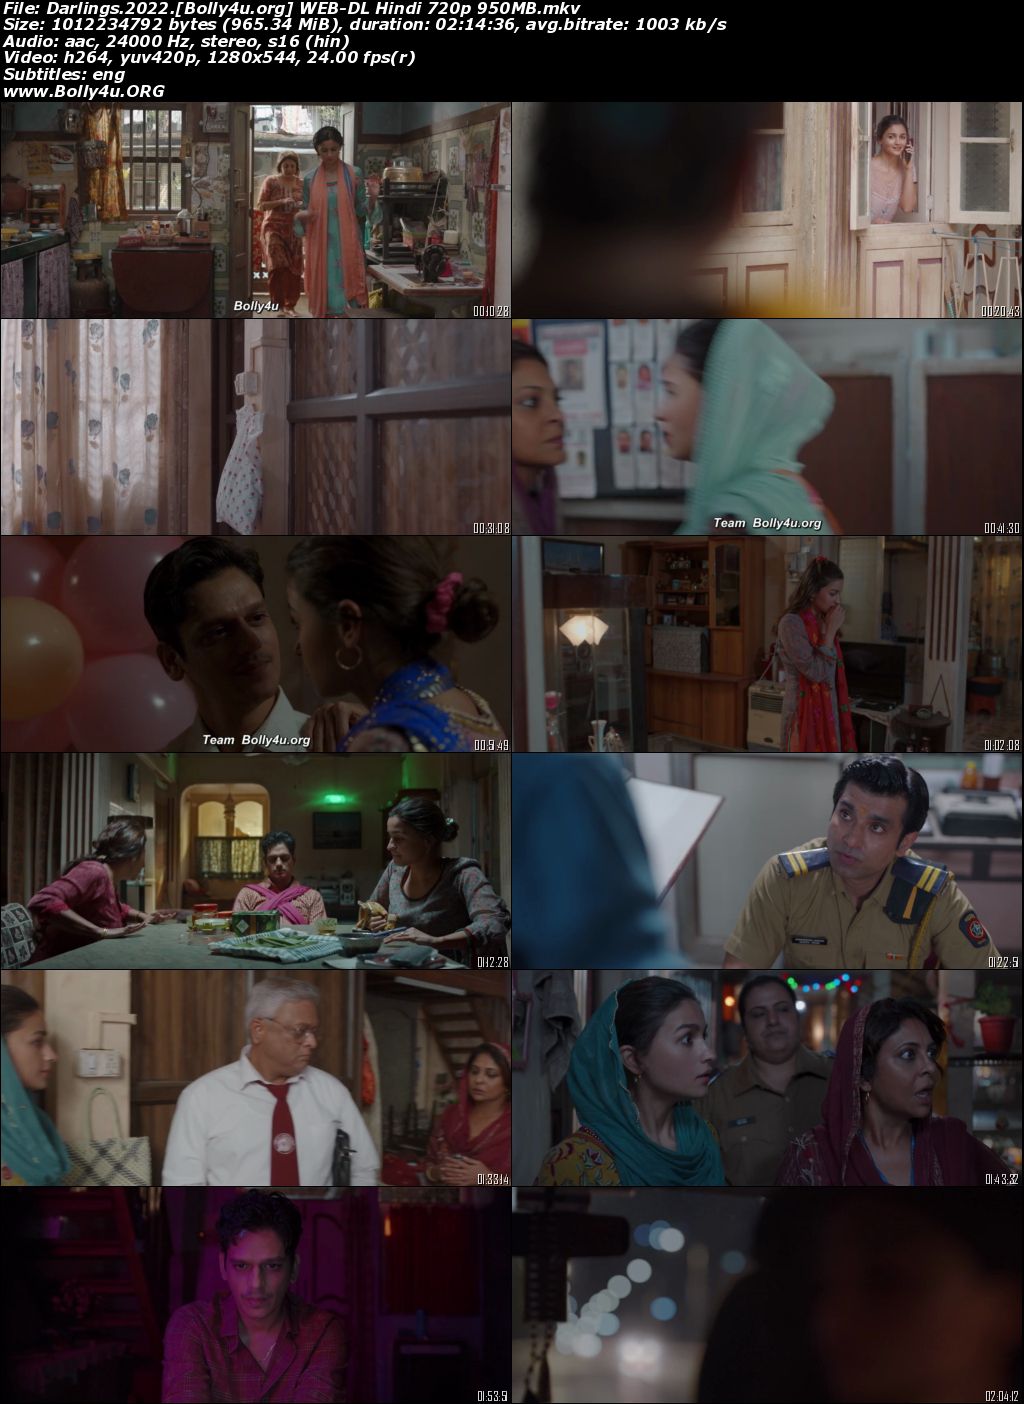 Darlings 2022 WEB-DL Hindi Full Movie Download 1080p 720p 480p